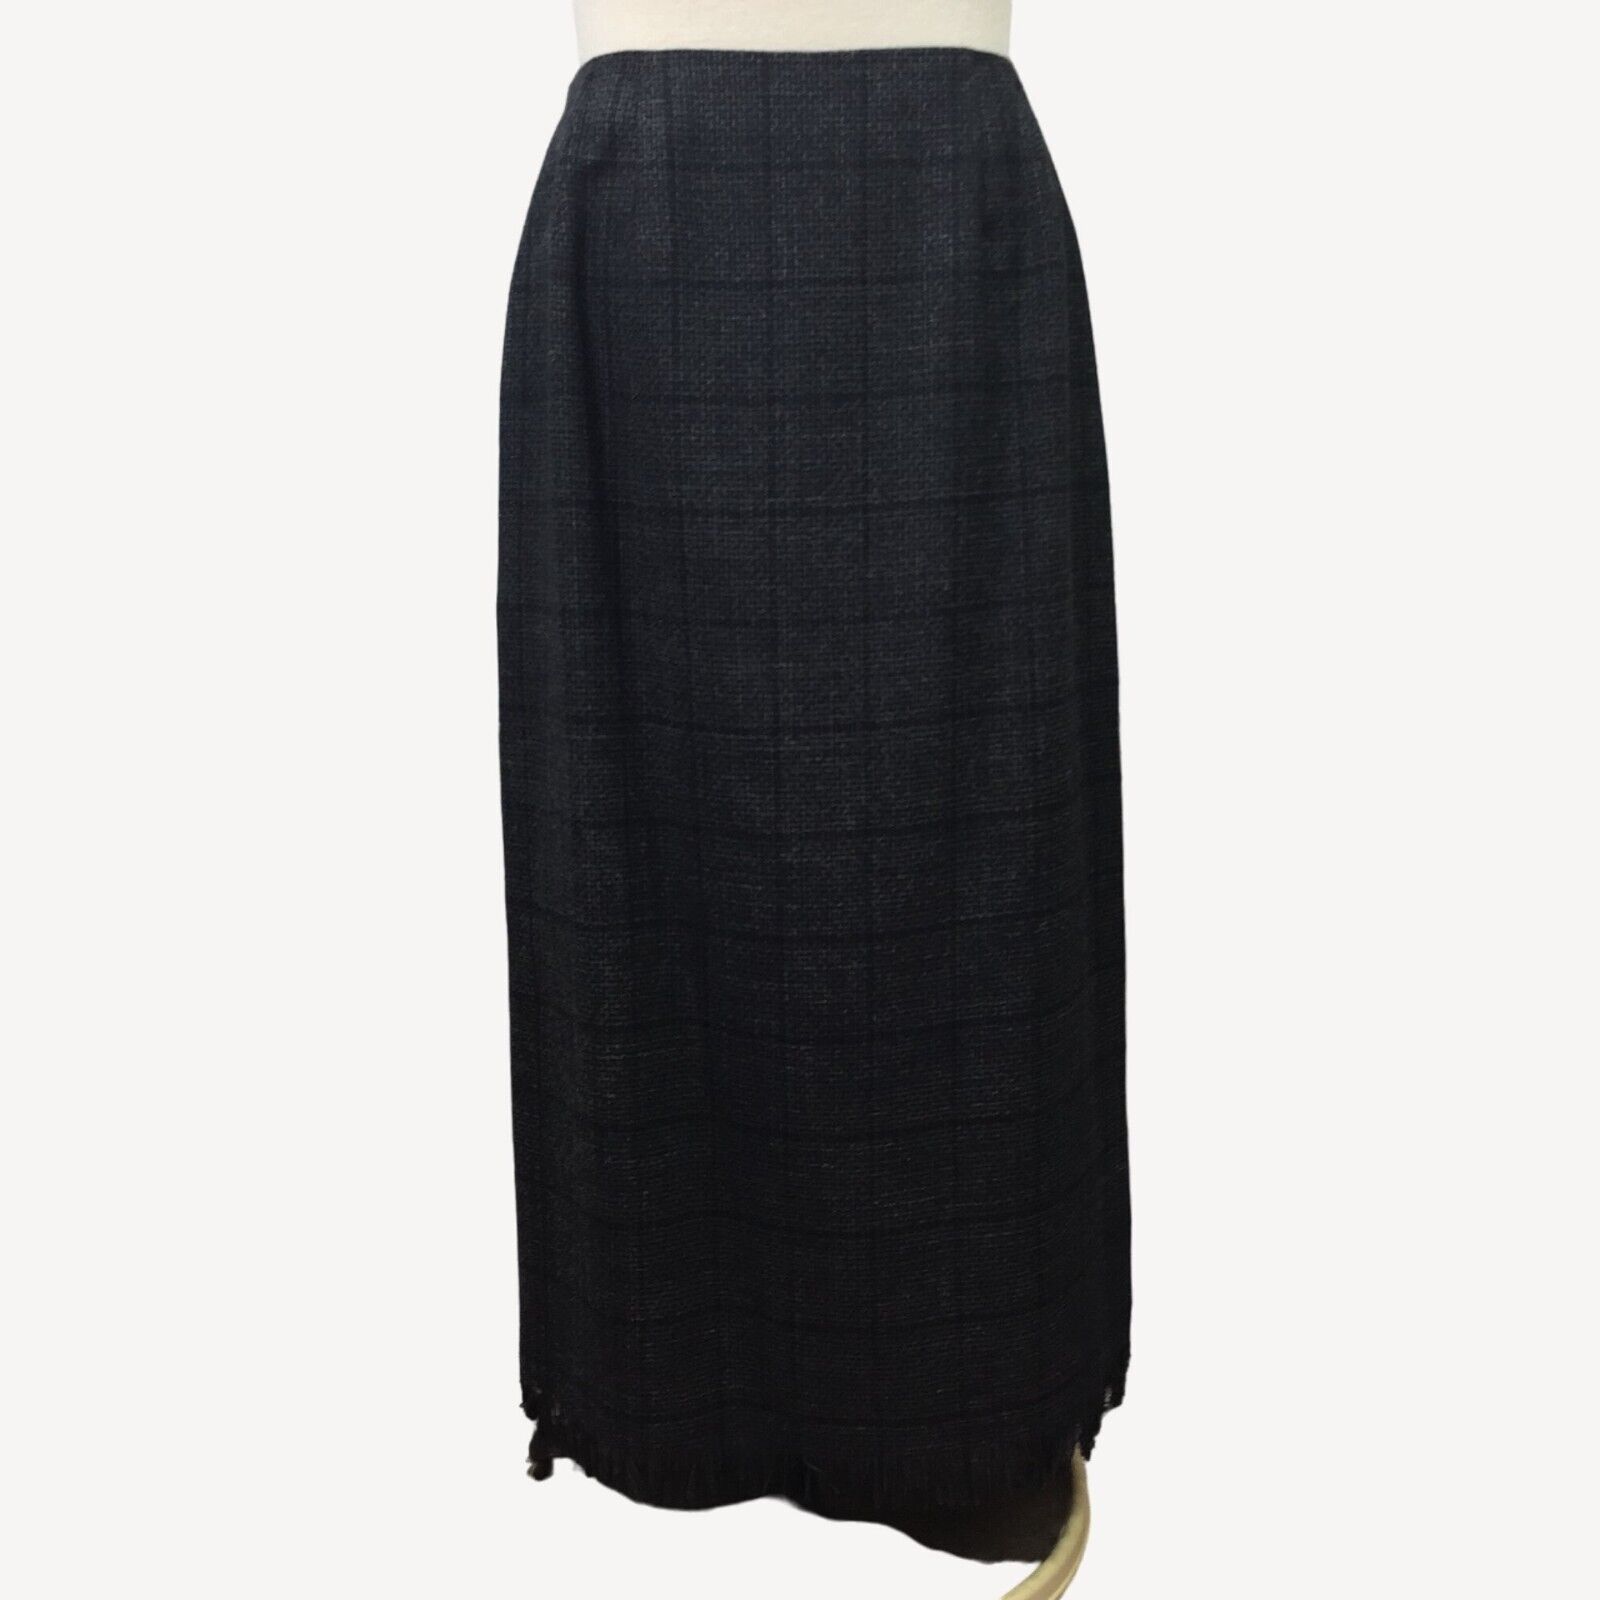 Primary image for Harve Benard Sport Women Wool Skirt Windowpane Pattern Black Gray Fringe Size 14